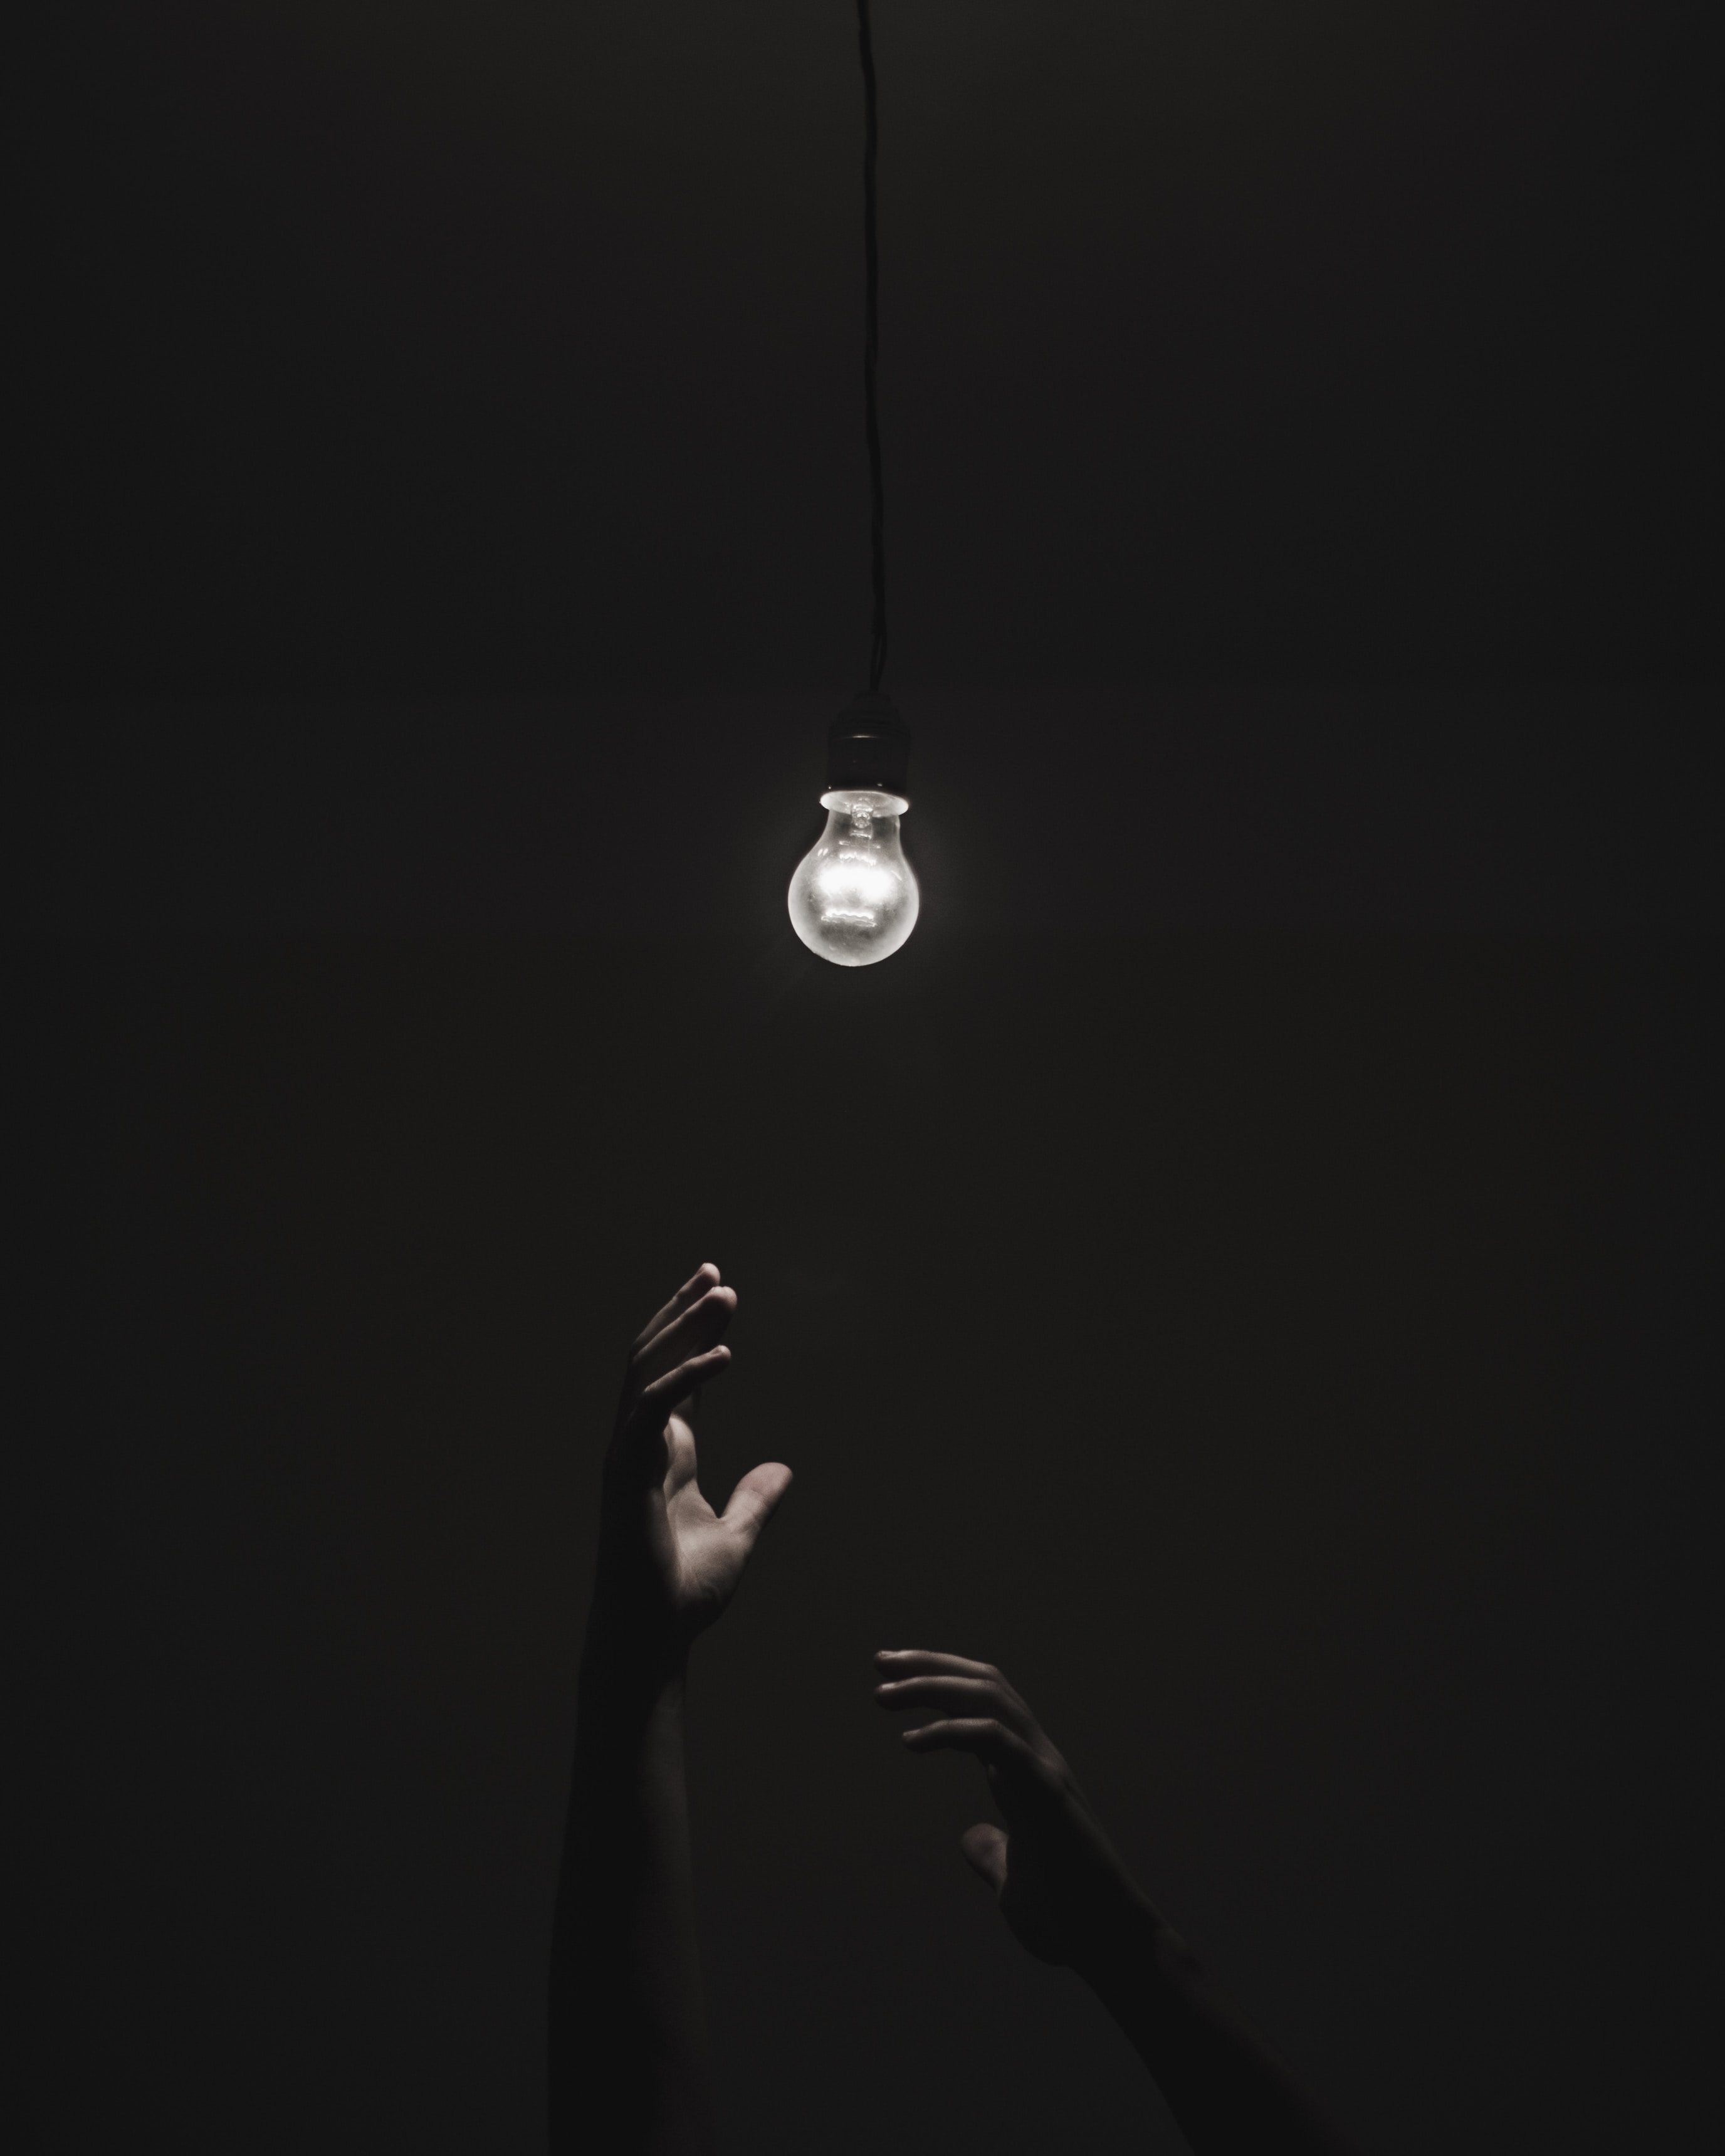 lighting, black, dark, hands, illumination, light bulb